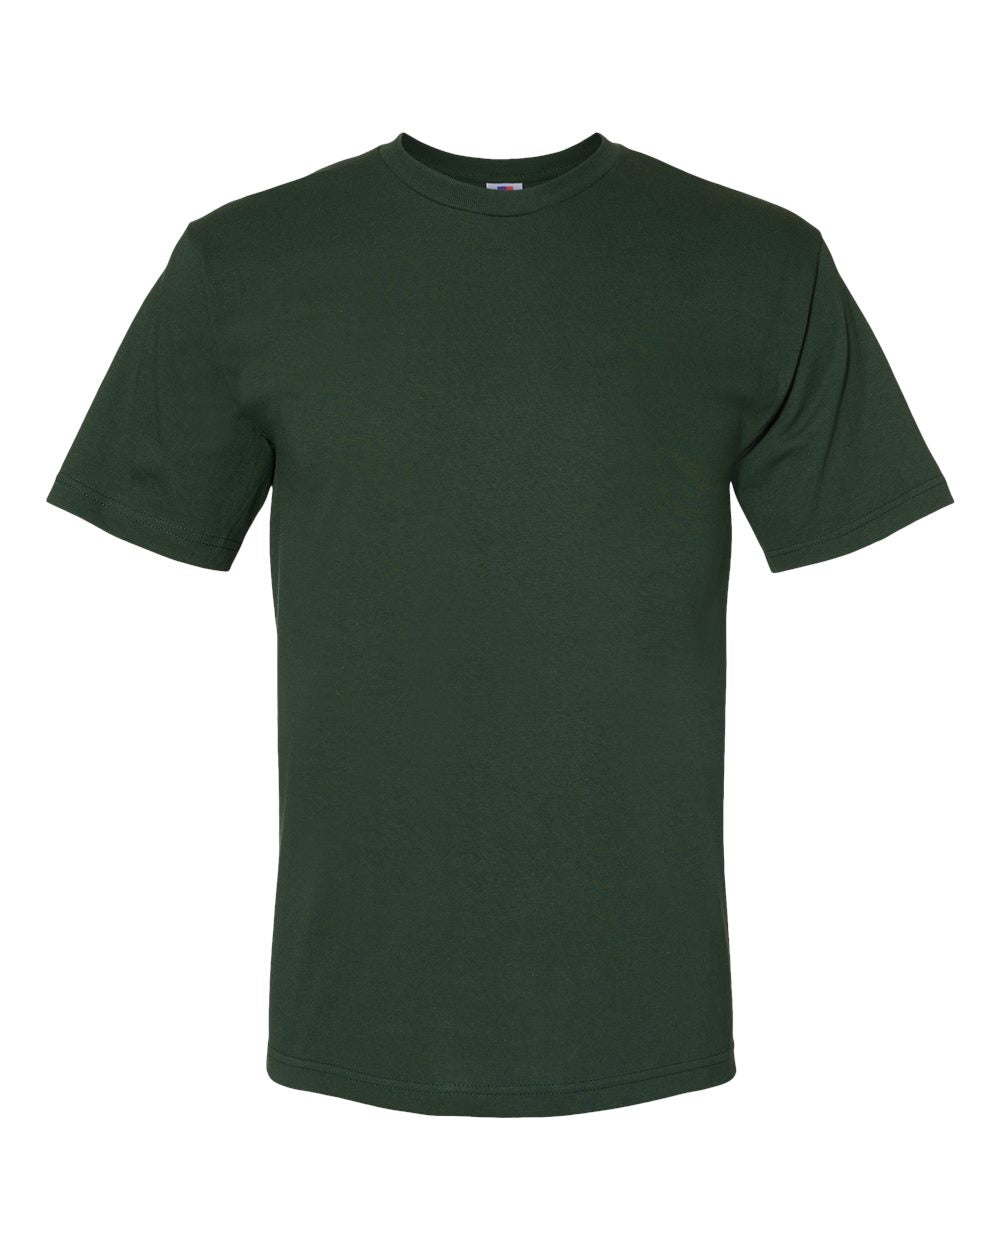 Green Hills Design 4 T-Shirt